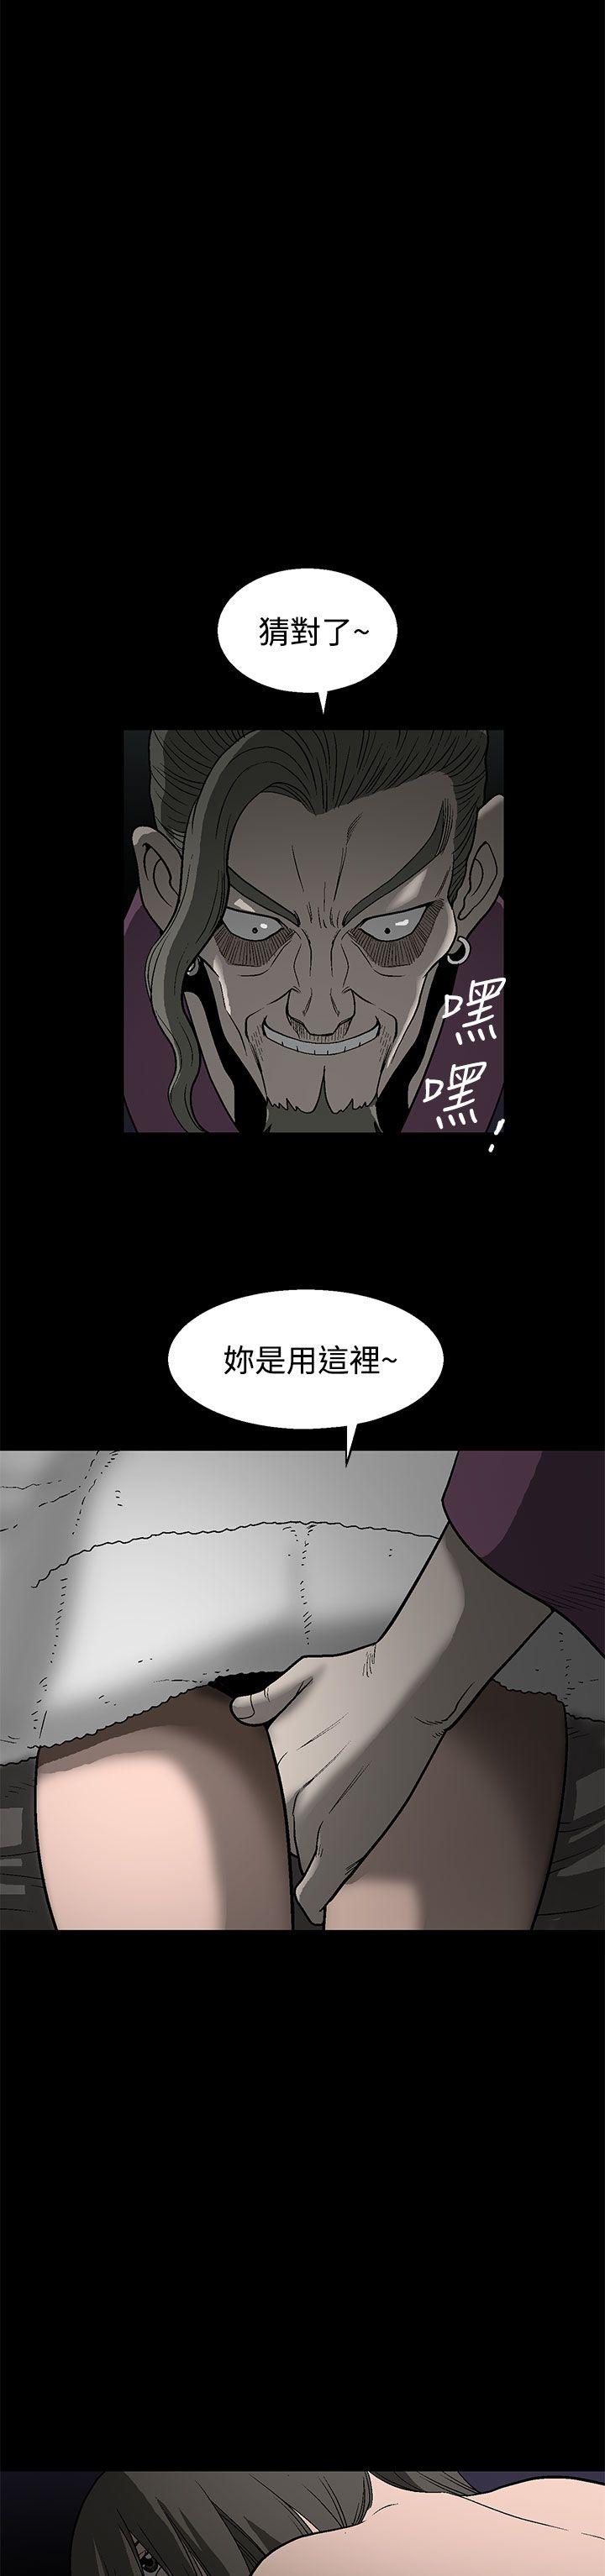 韩国污漫画 煦娜 第1话 40